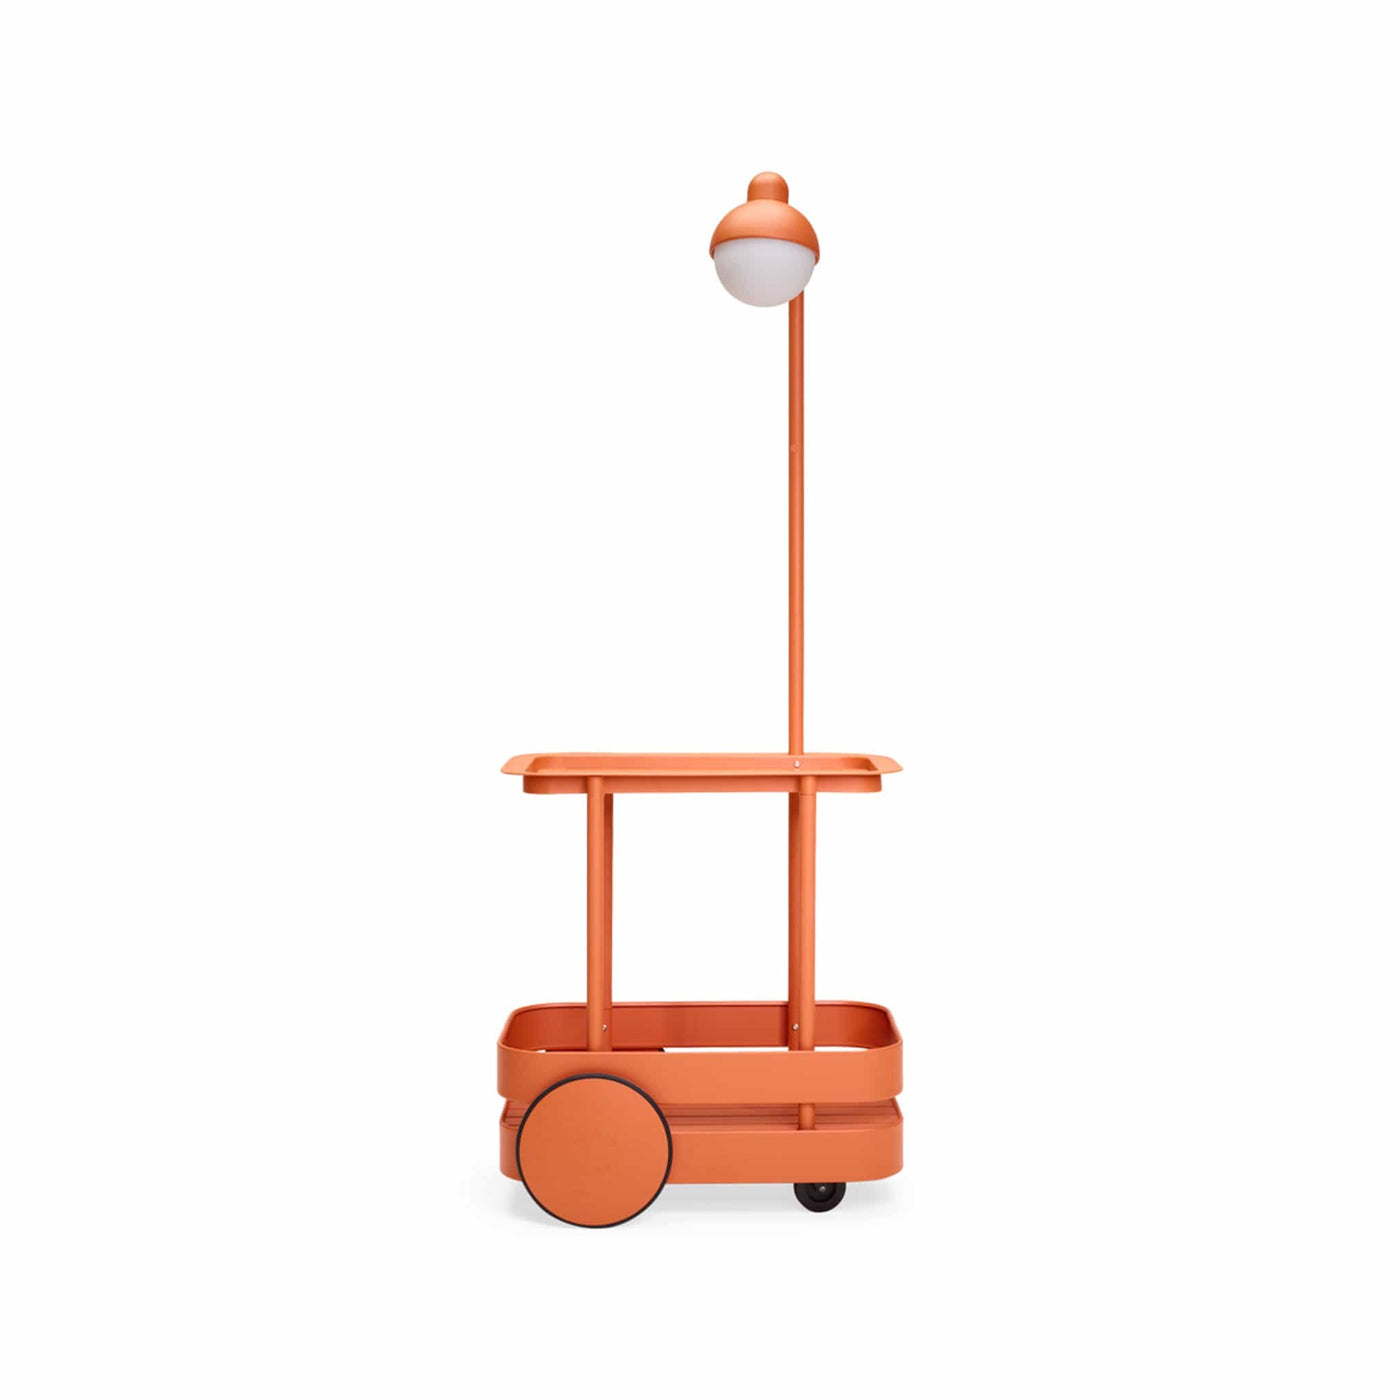 Le Jolly Trolley de Fatboy : bar mobile élégant pour vos soirées en extérieur, avec une lampe LED ajustable et un design polyvalent pour s'adapter à toutes vos occasions. Tangerine.